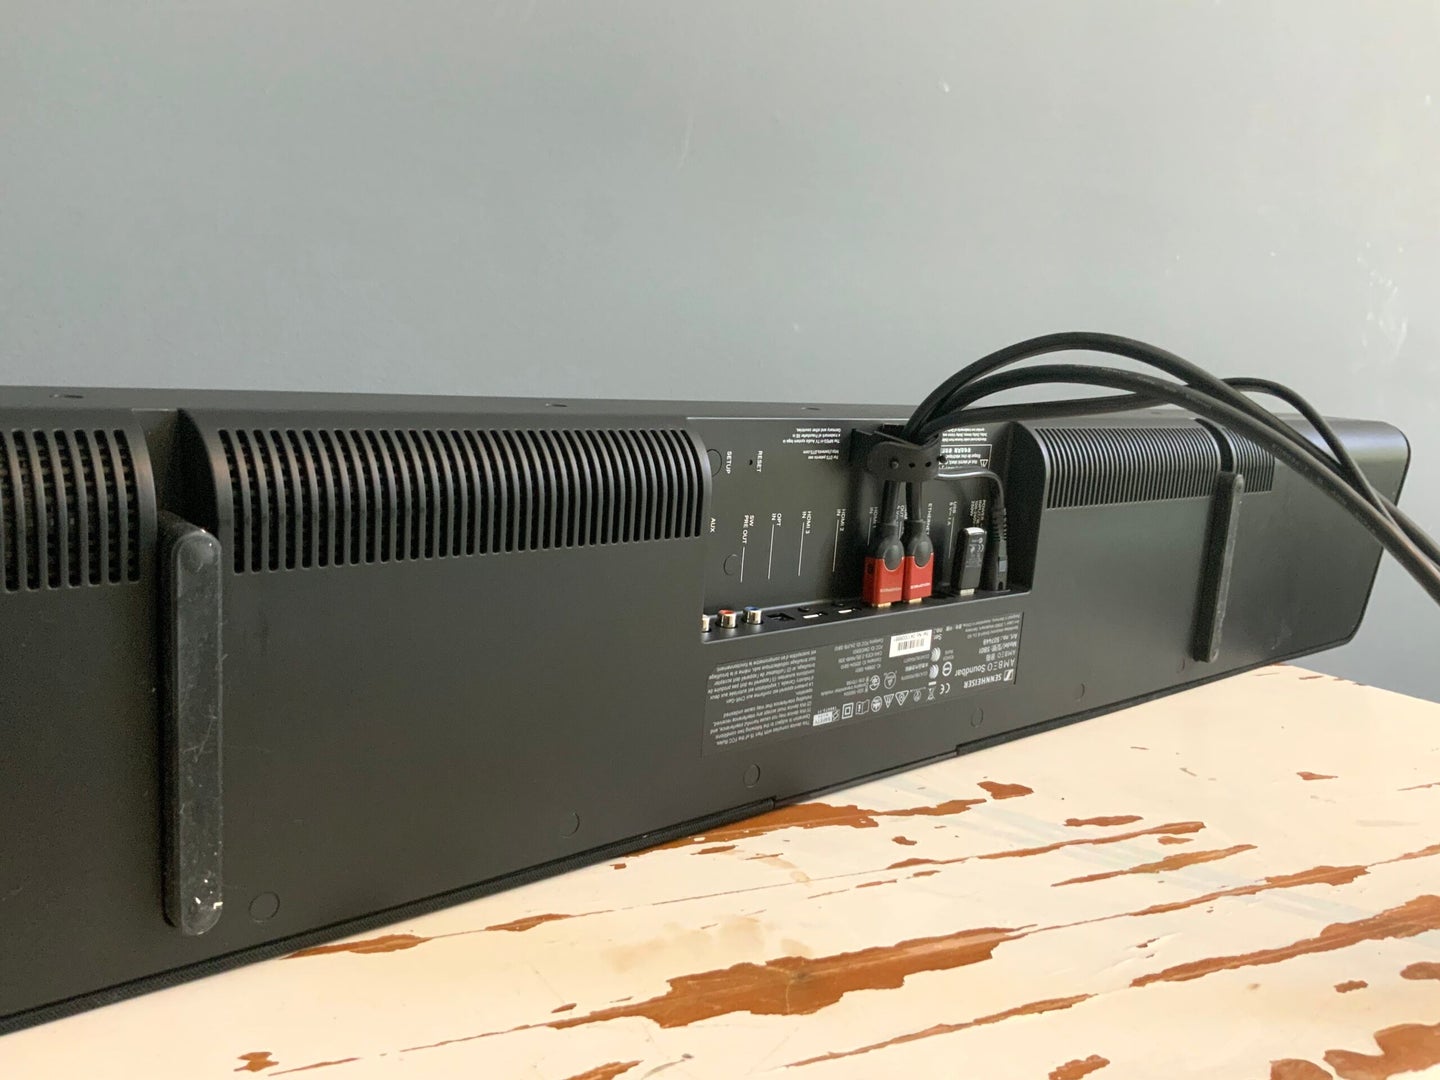 4. Benefits of HDMI Soundbar Connections